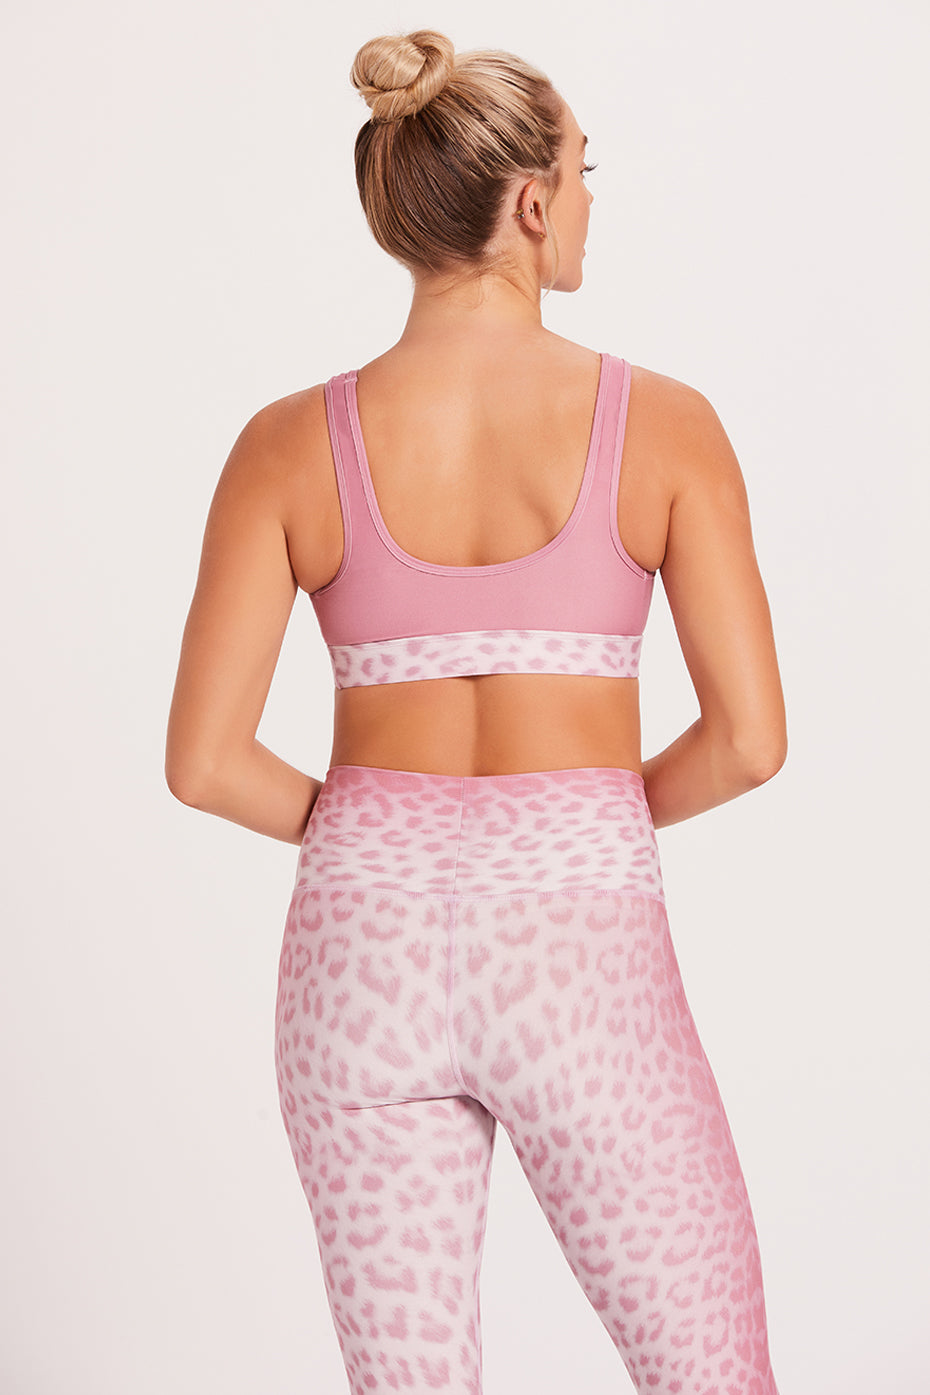 Peek-A-Boo Sports Bra - Leopard Pink